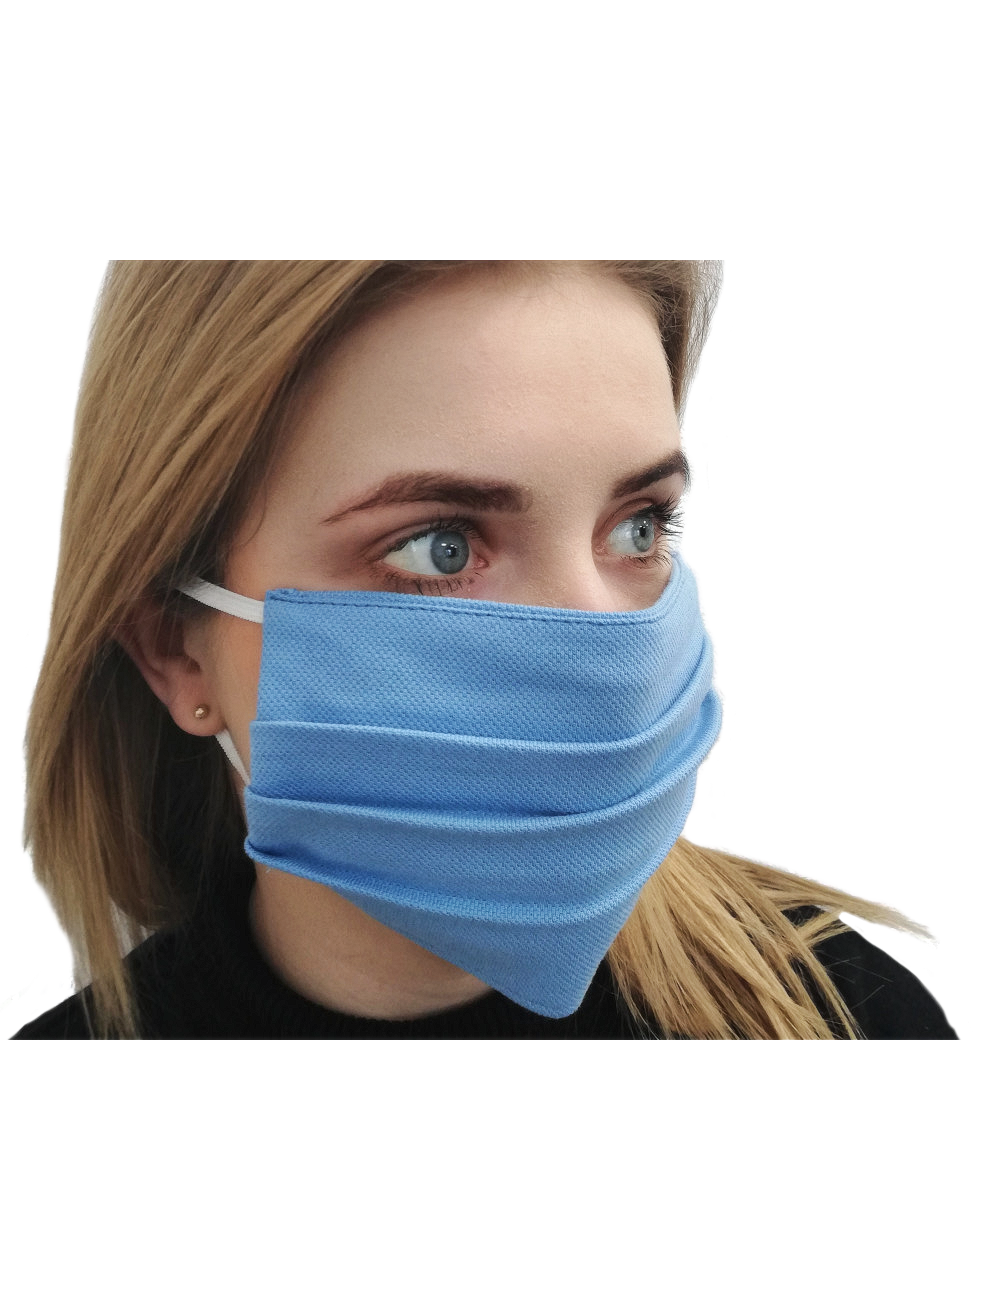 Streetwear blaue Schutzmaske für Mund und Nase